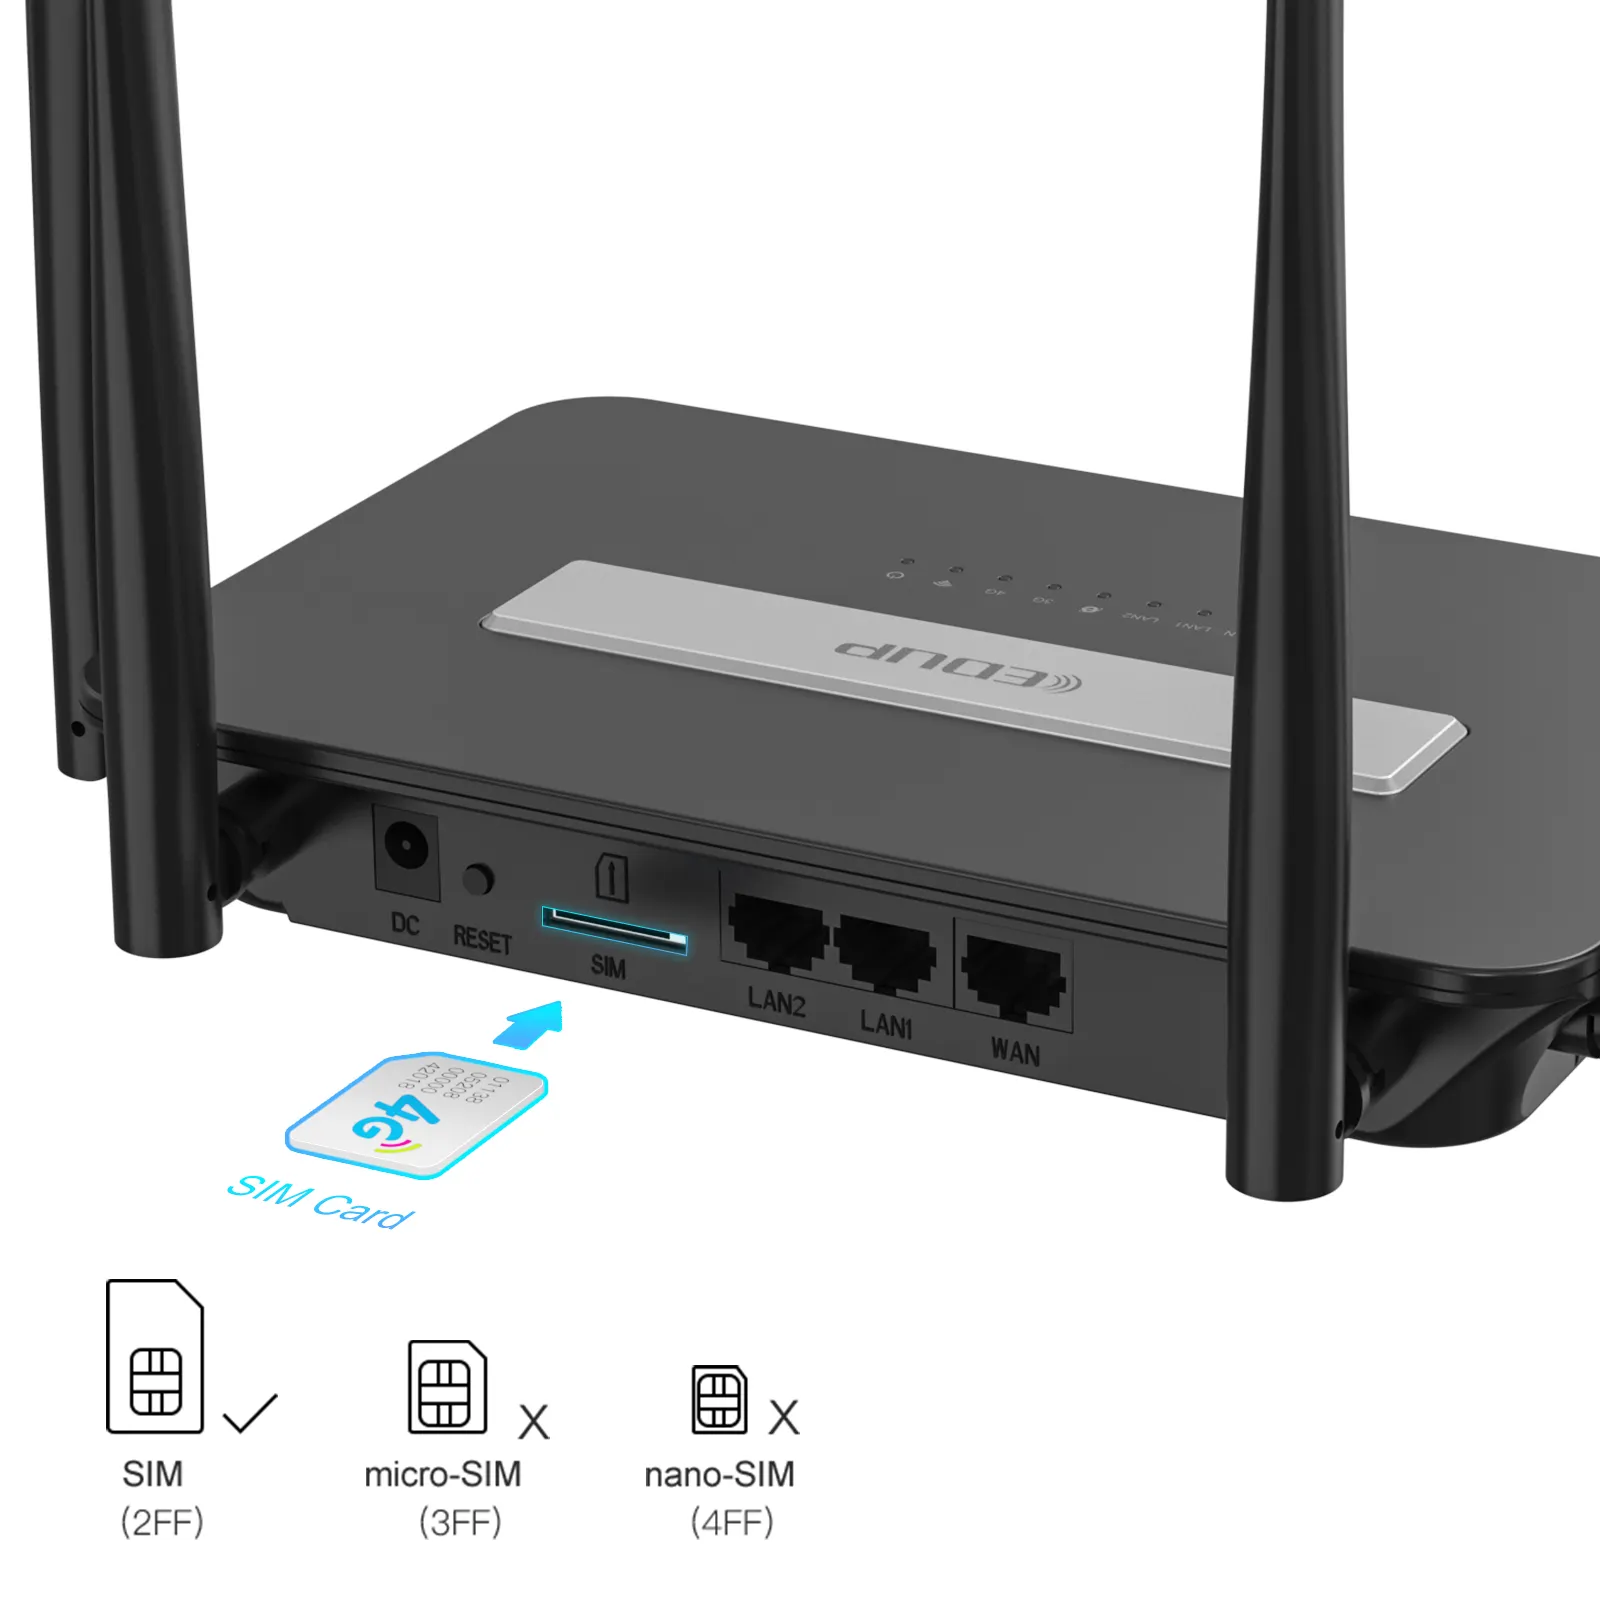 EDUP 300Mbps routeur wifi CPE 4G LTE Modem routeurs wifi b310 lte CPE Routeur Wifi 4G LTE avec emplacement pour carte Sim